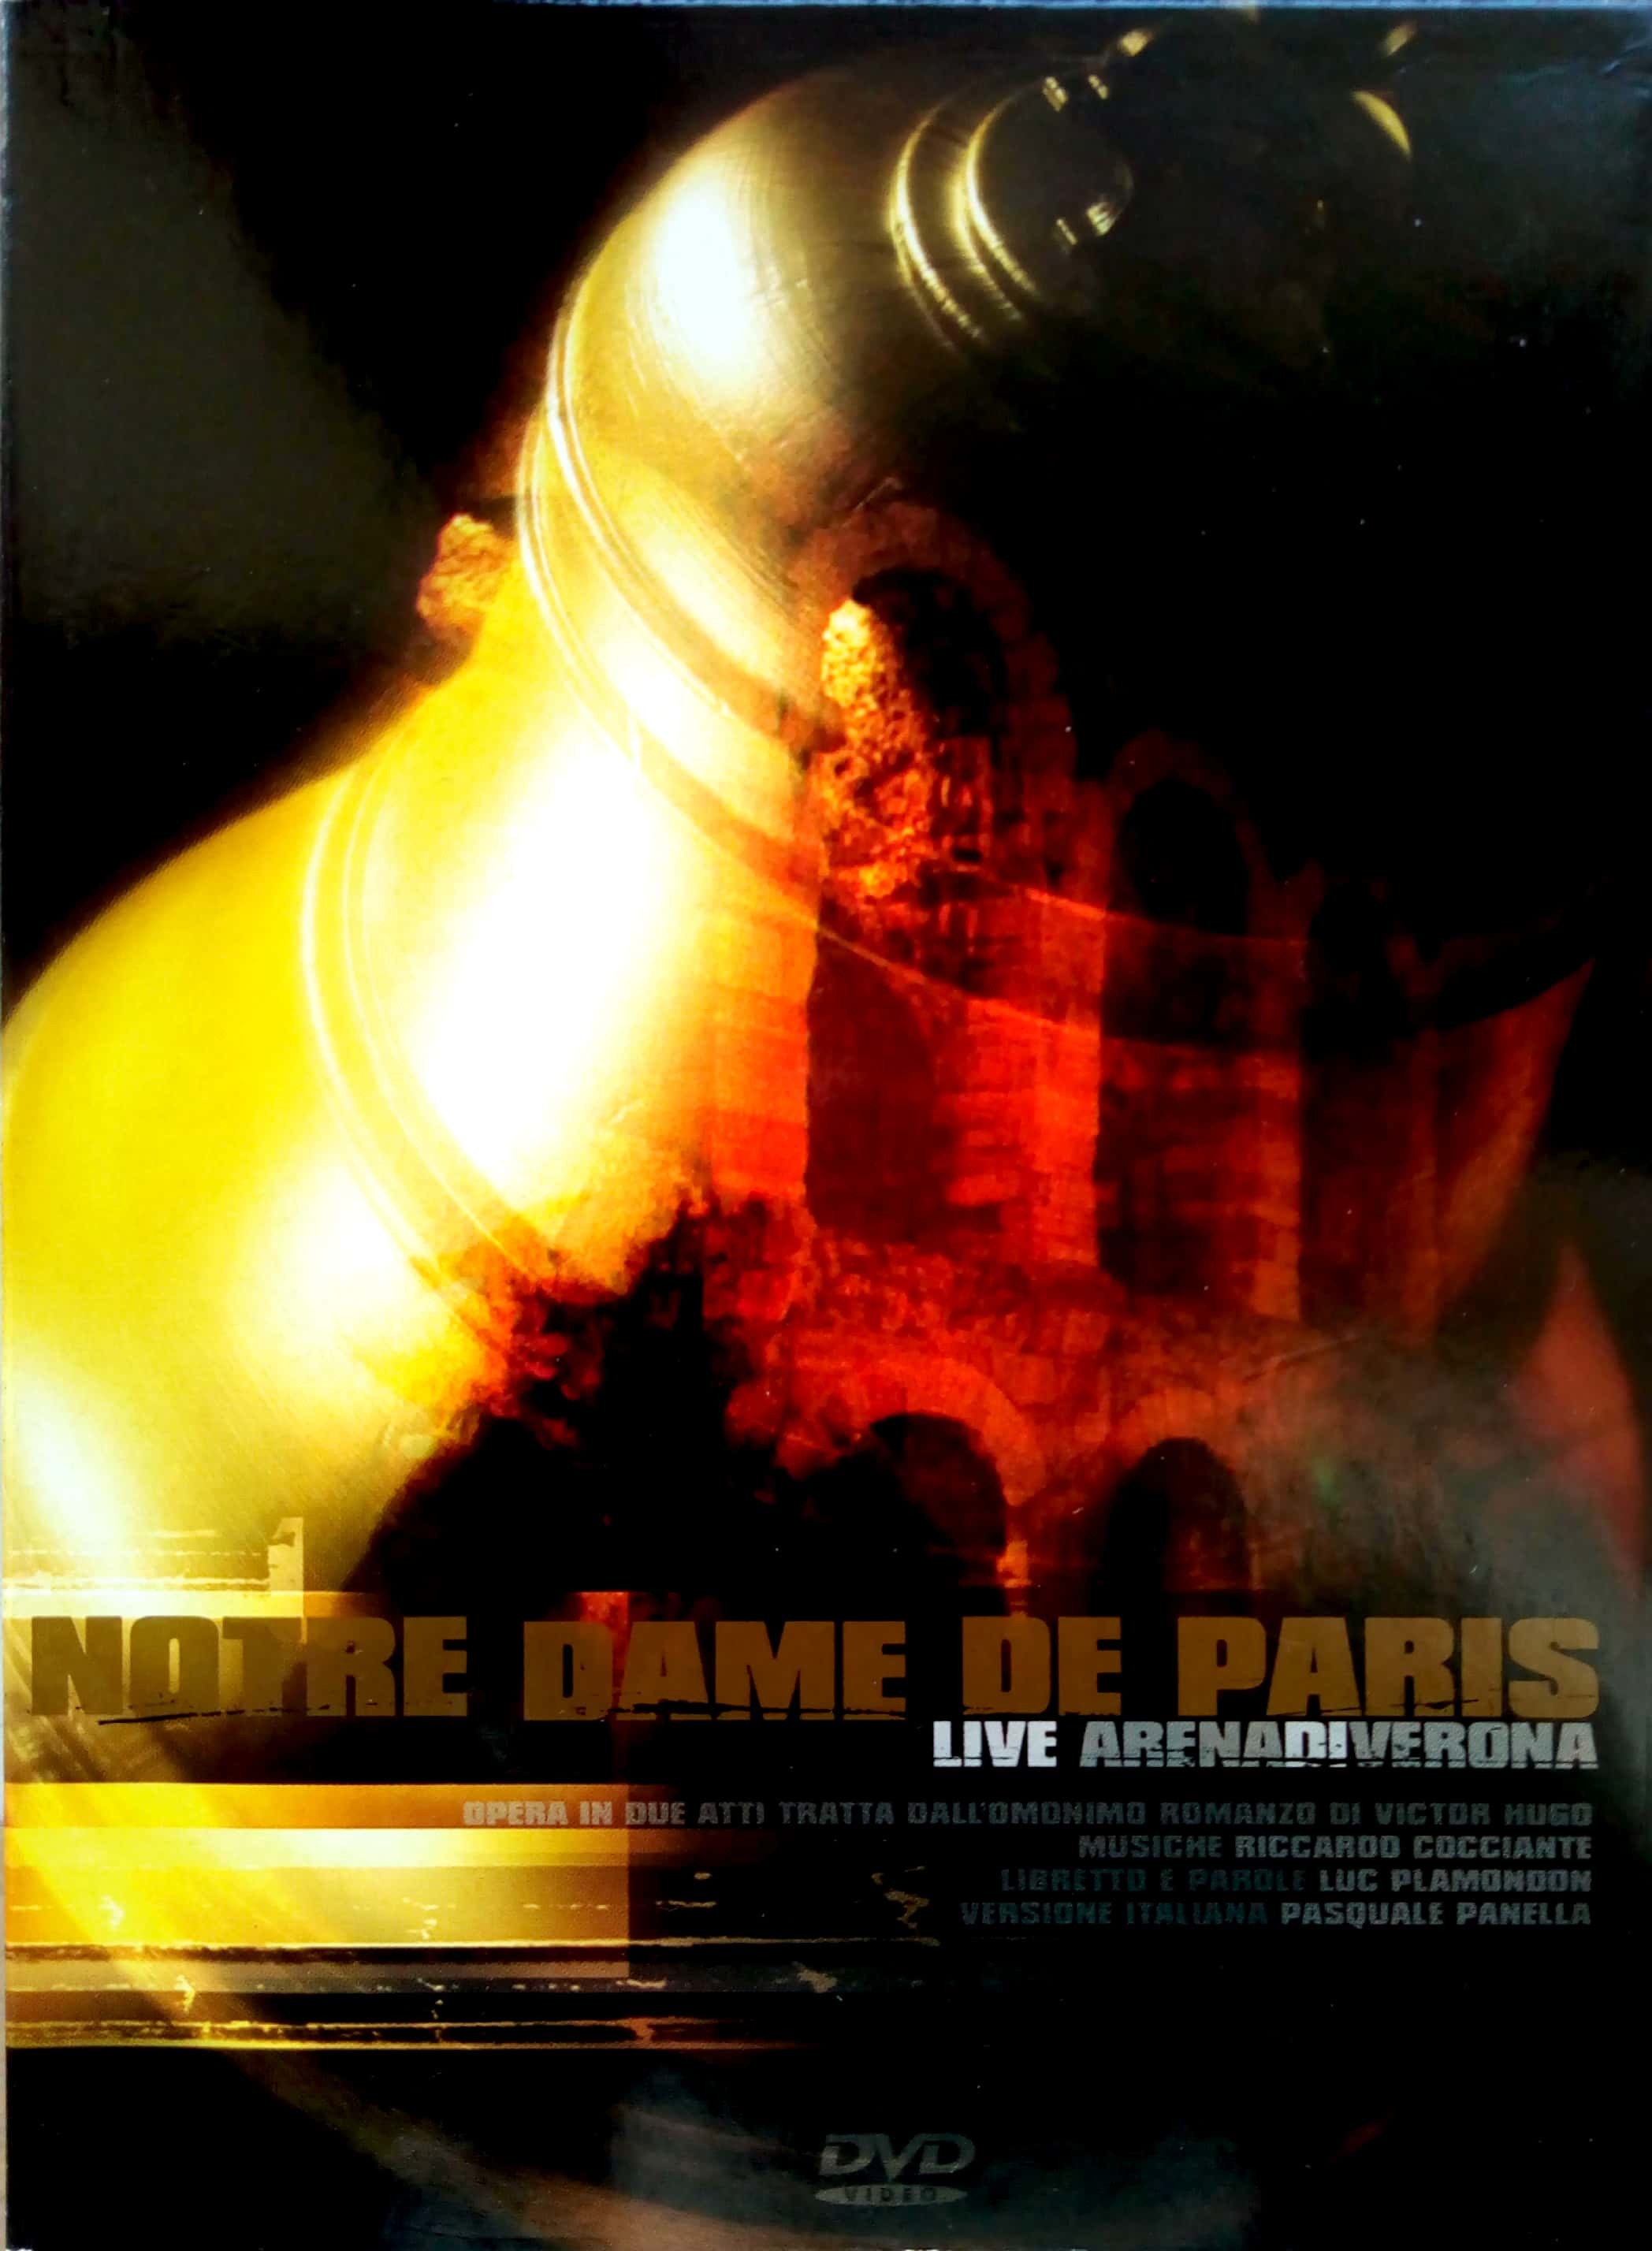 Notre Dame De Paris - Live Arena di Verona DVD (DigiPack) (Italy)